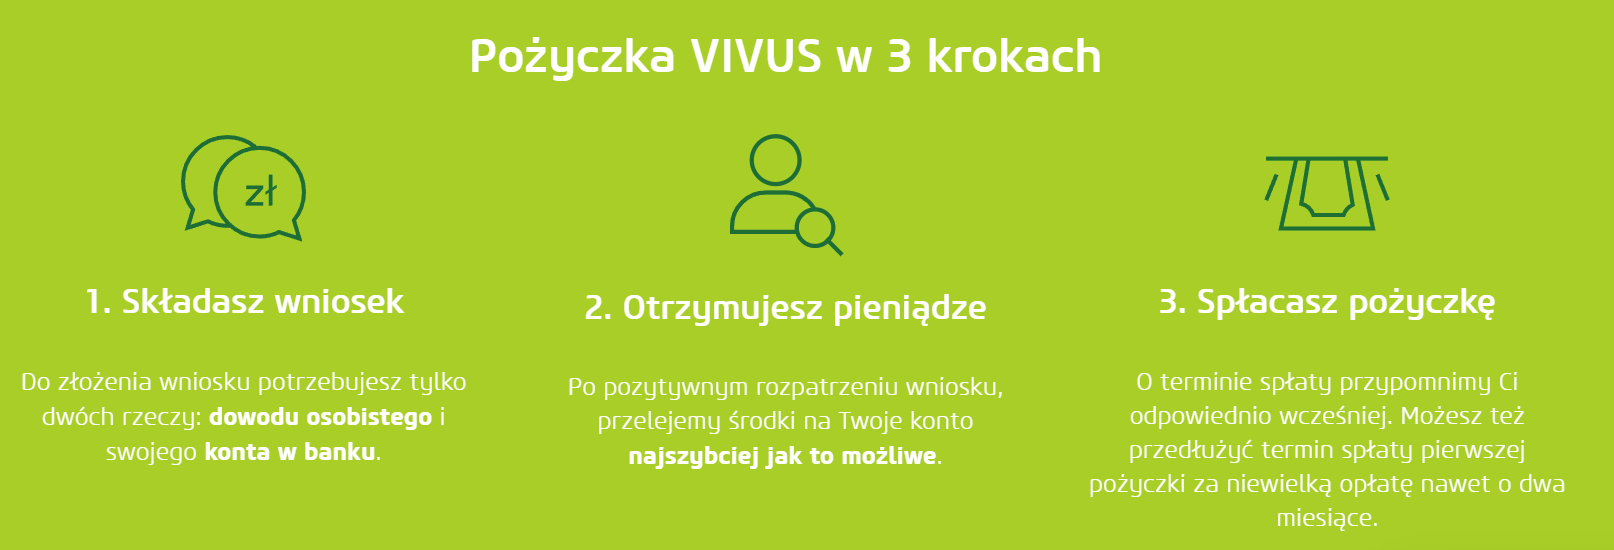 Fot. Screen / vivus.pl (z dnia 24.01.2022)